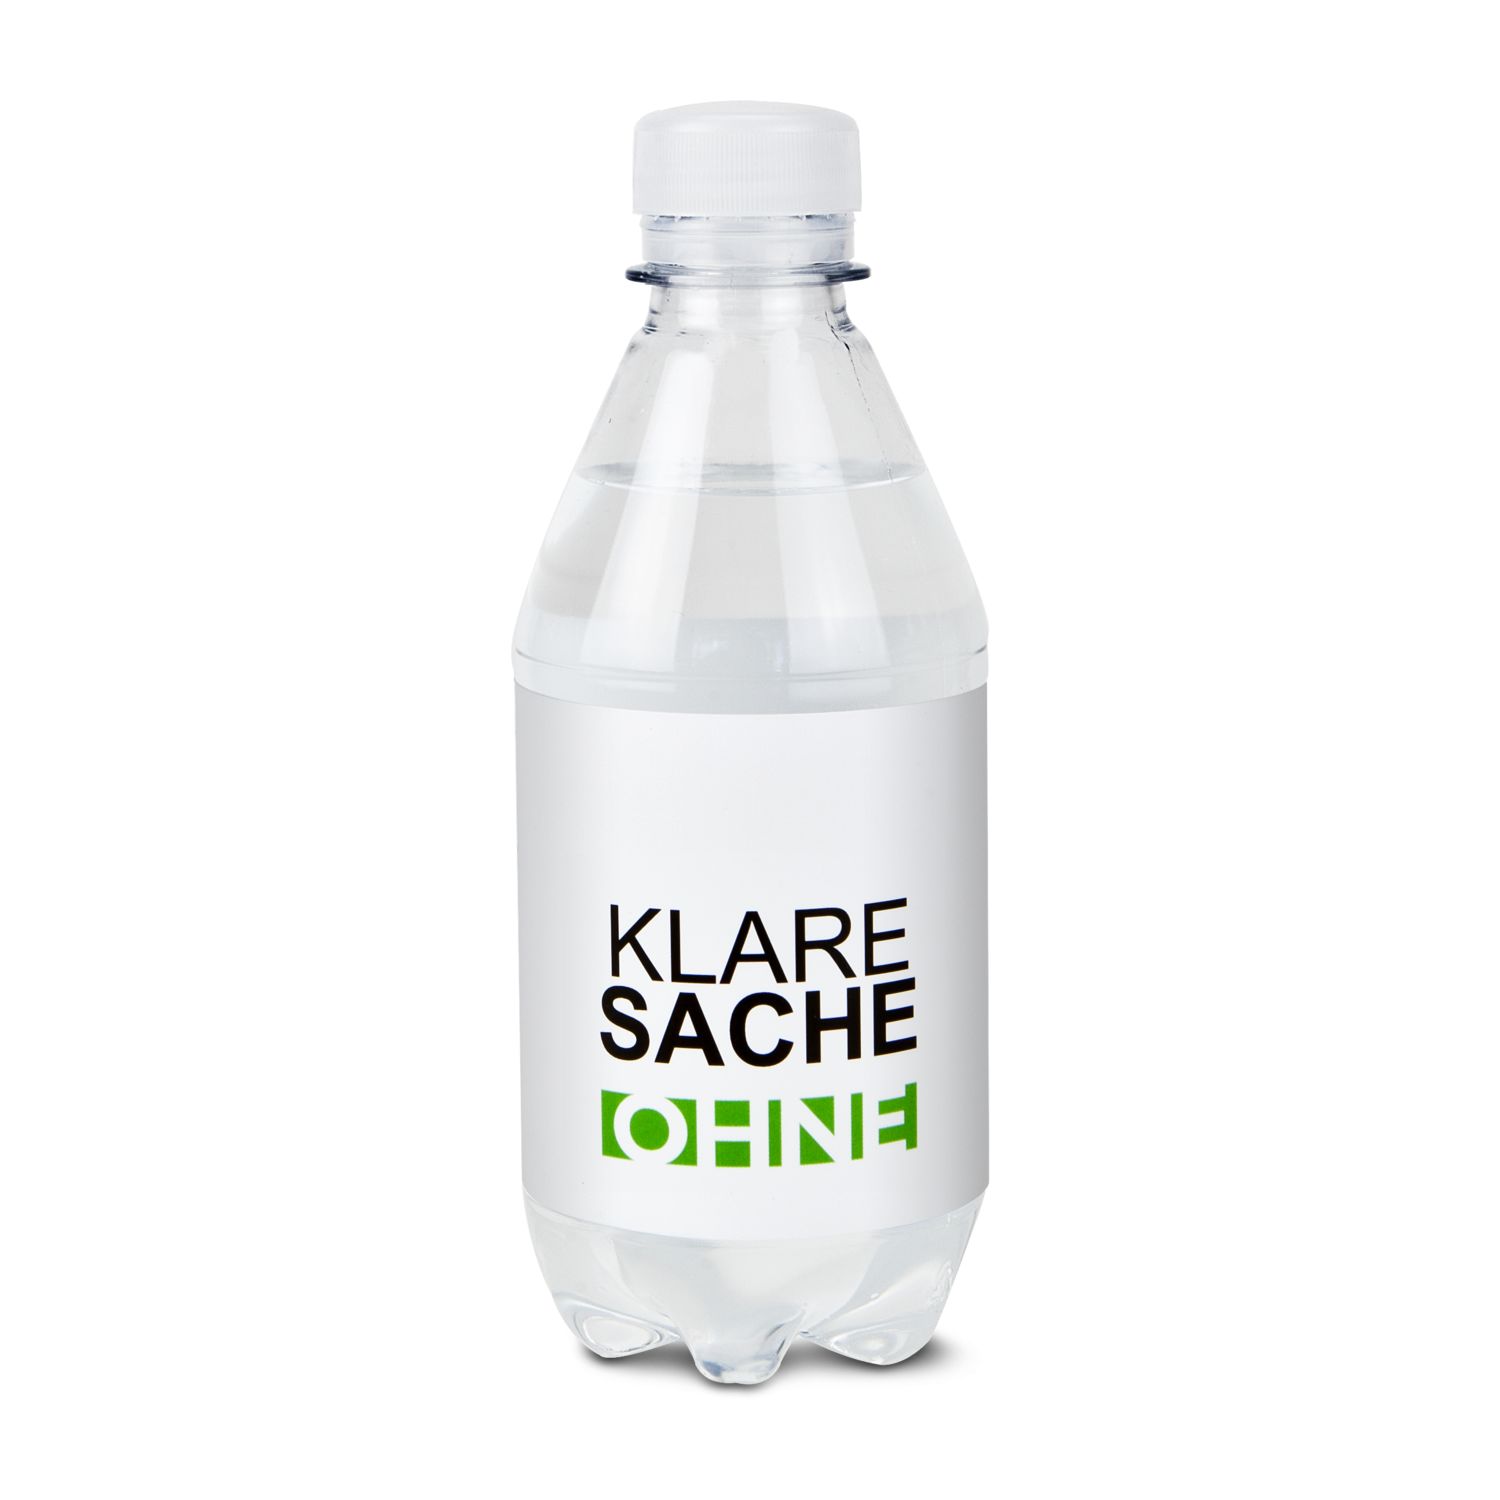 330 ml PromoWater - Mineralwasser, still, Hergestellt in Deutschland - Folien-Etikett